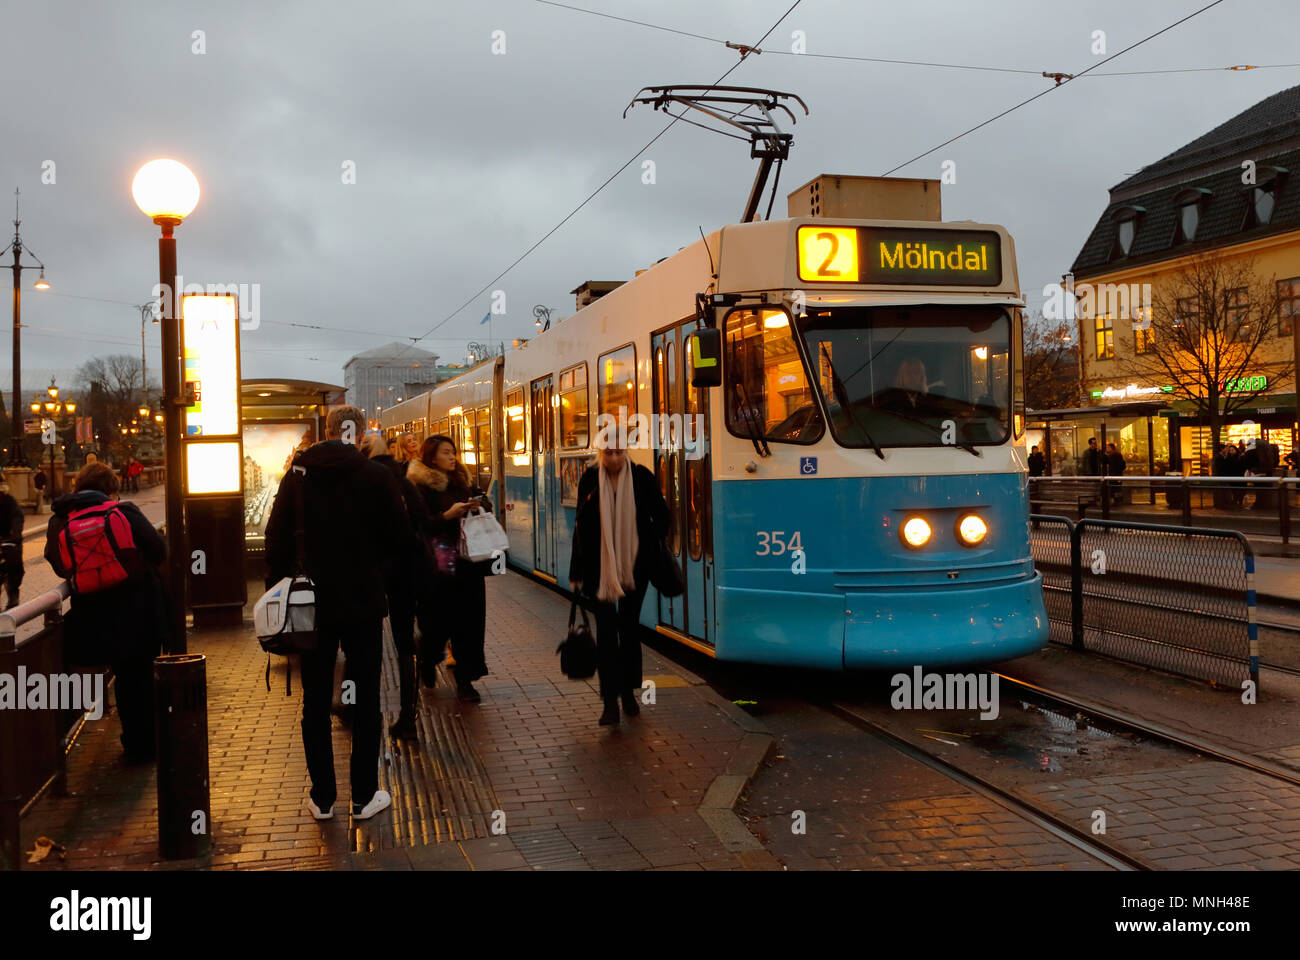 Göteborg, Schweden - 1. November 2017: Eine blaue Straßenbahn der Klasse M31 in Betrieb auf der Linie 2 an der Haltestelle Kungsportsplatsen während der Evning. Stockfoto